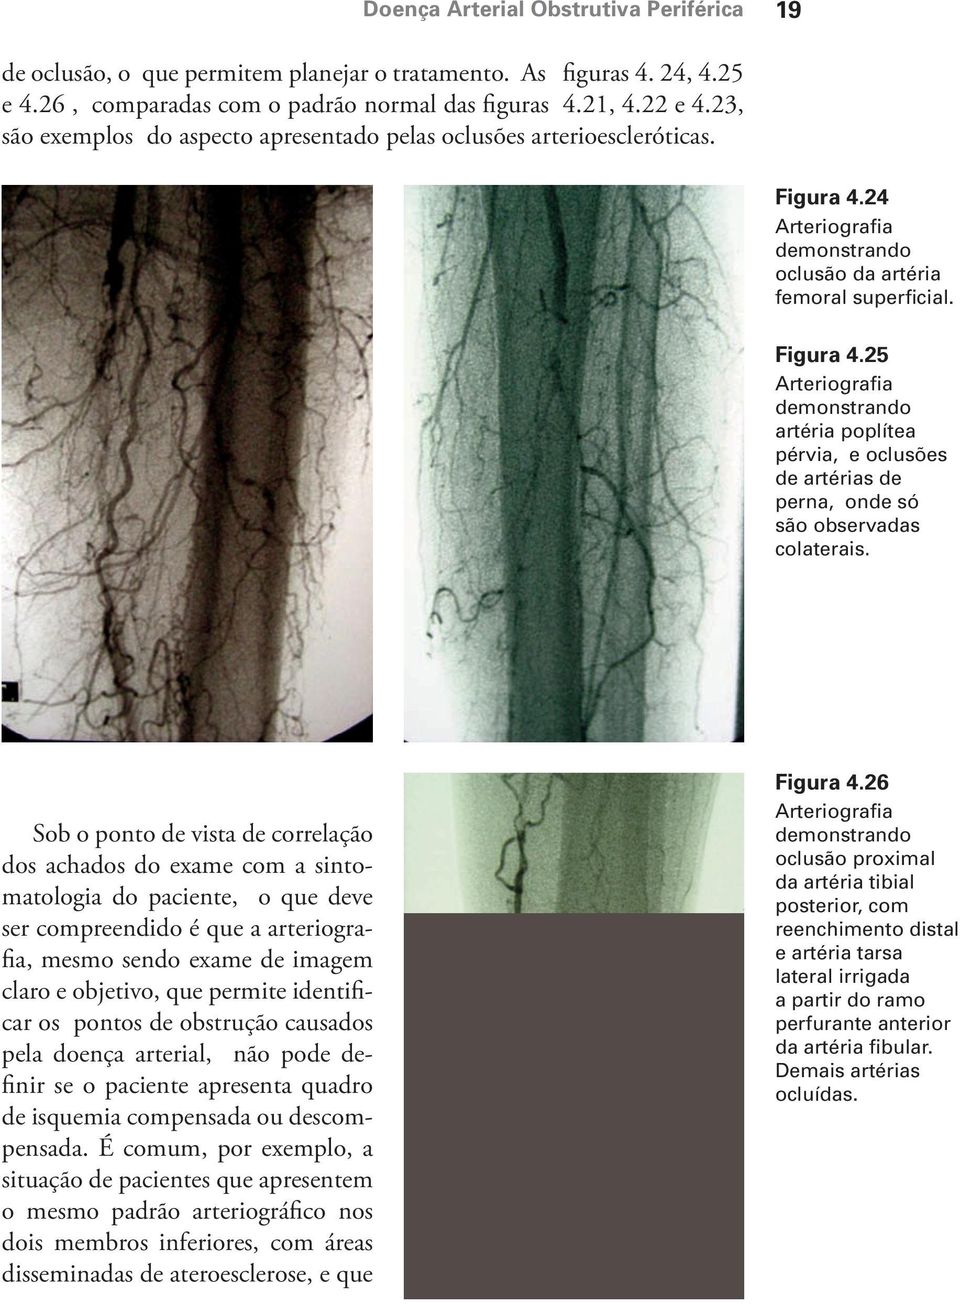 24 Arteriografia demonstrando oclusão da artéria femoral superficial. Figura 4.